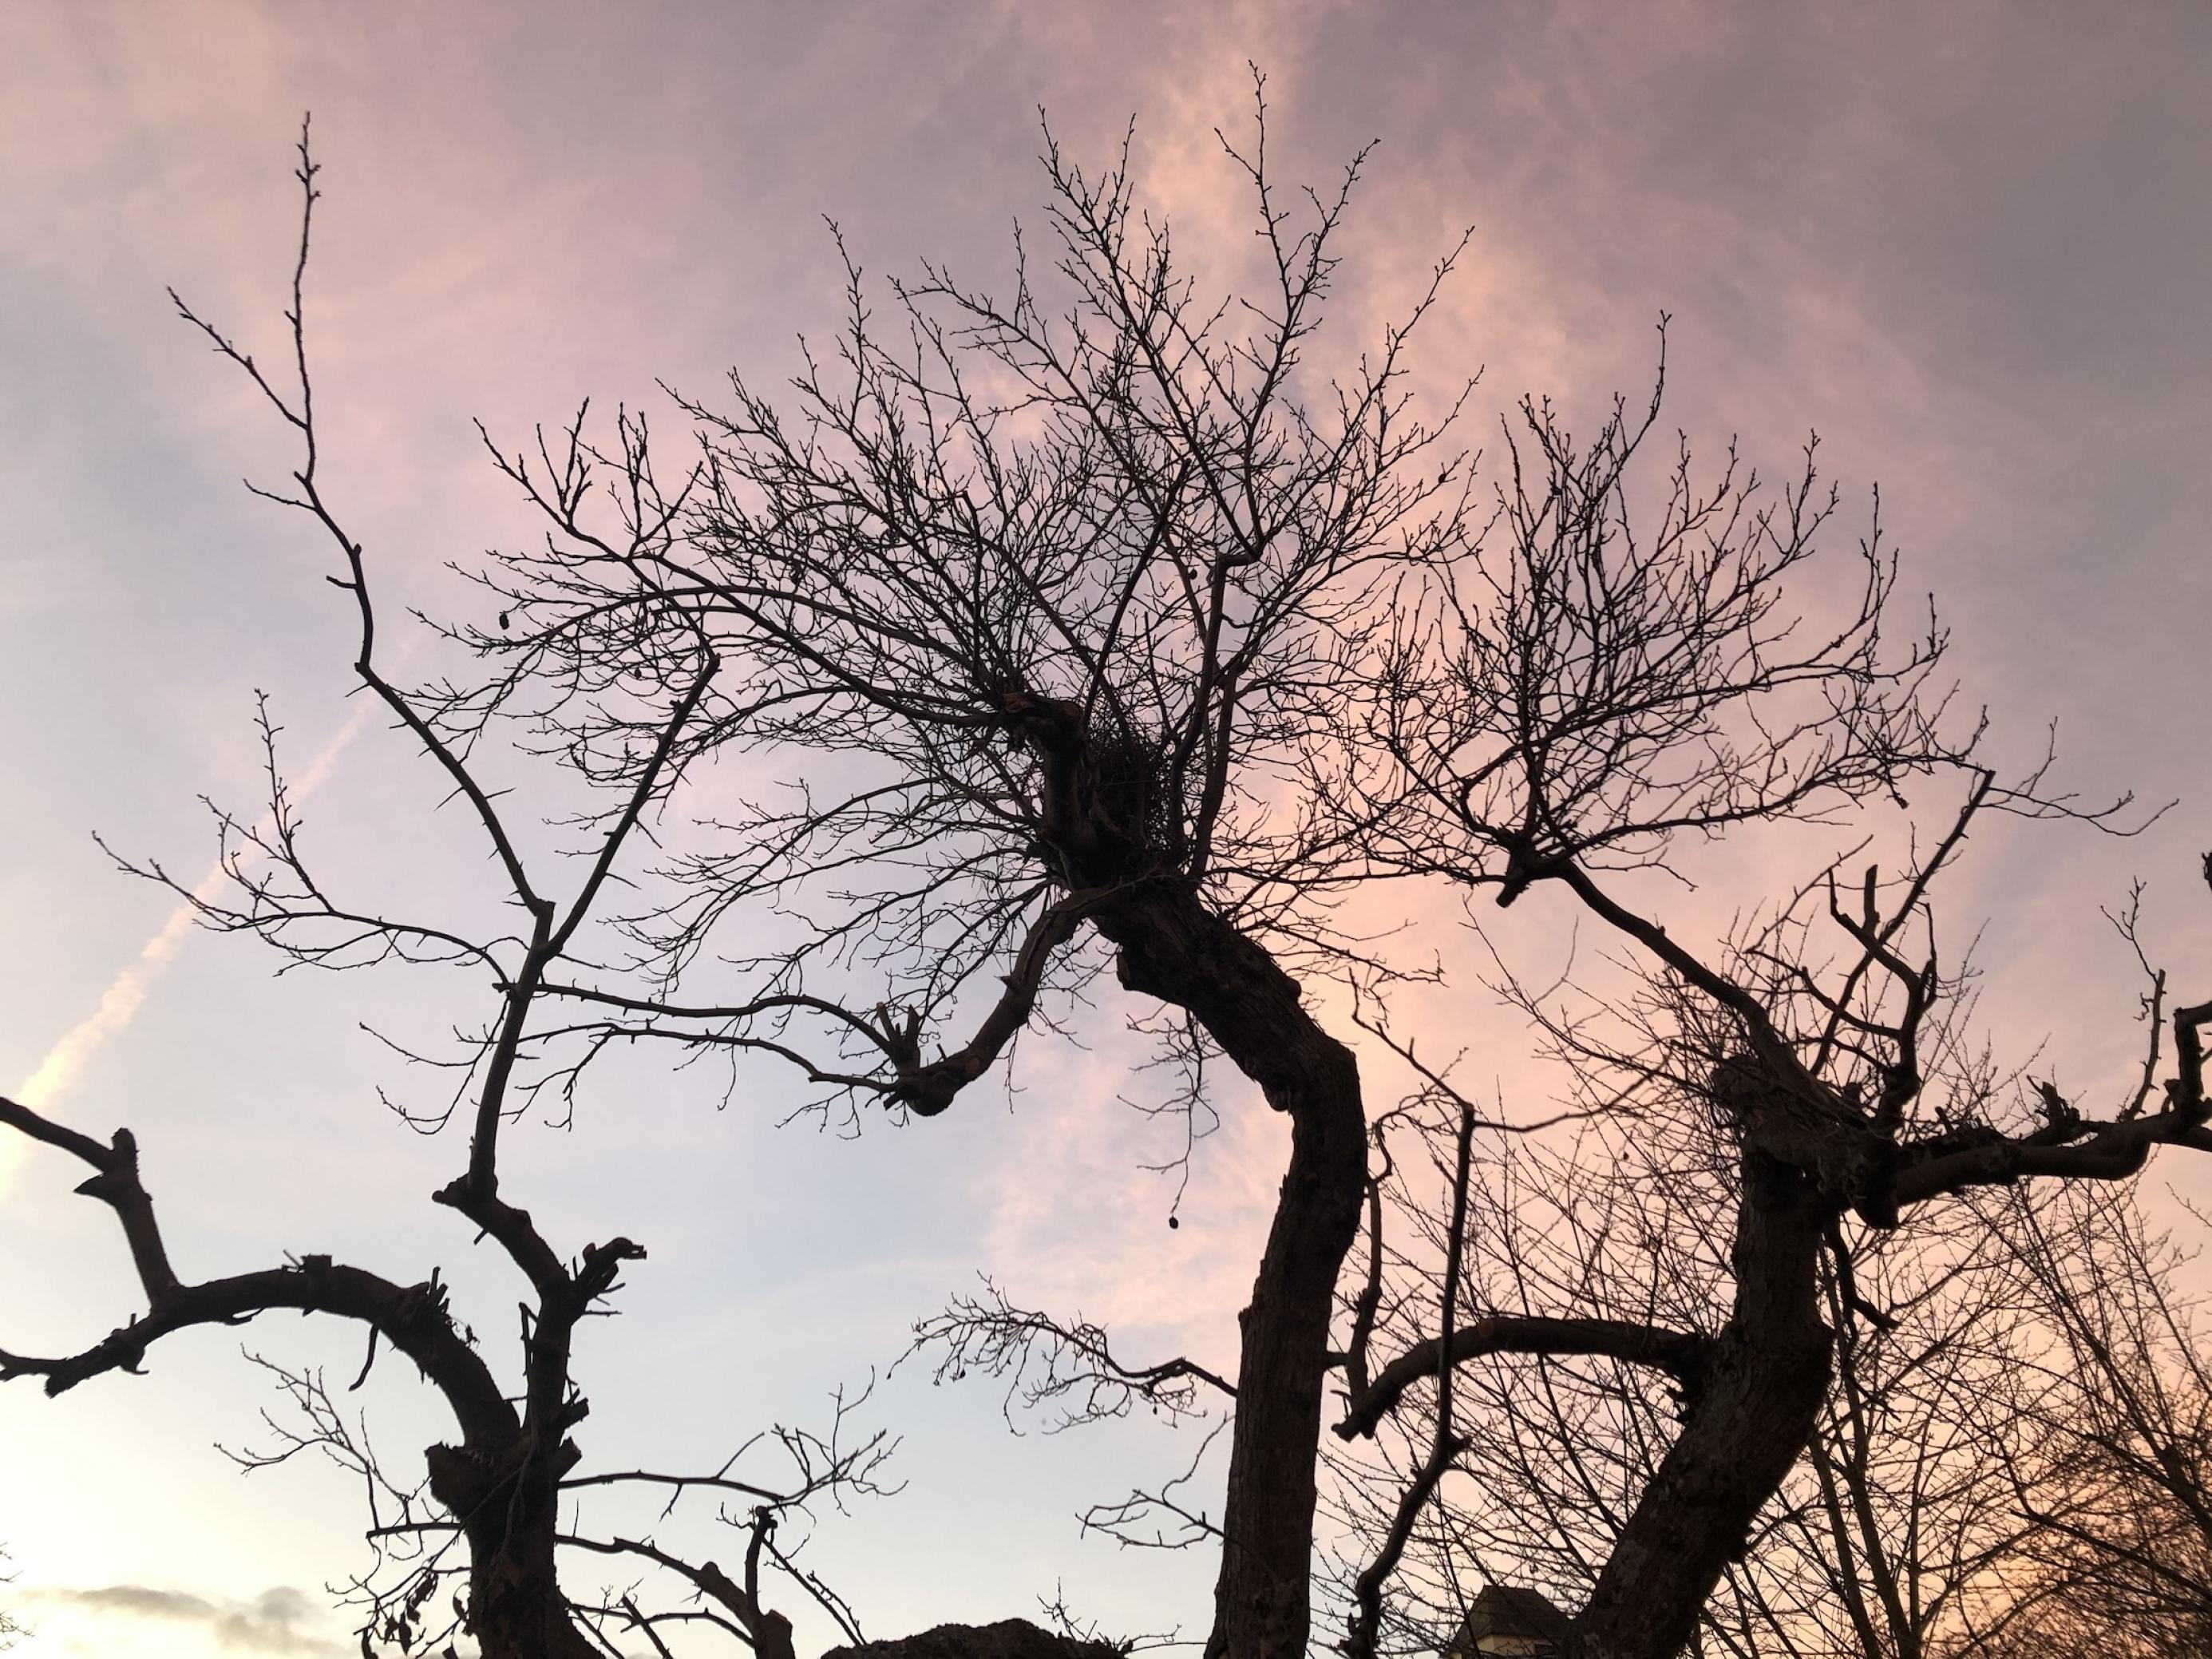 Das Bild zeigt drei laubfreie Bäume, die sehr chaotisch in den Himmel wachsen und dabei eine leicht gespenstische Anmutung haben.